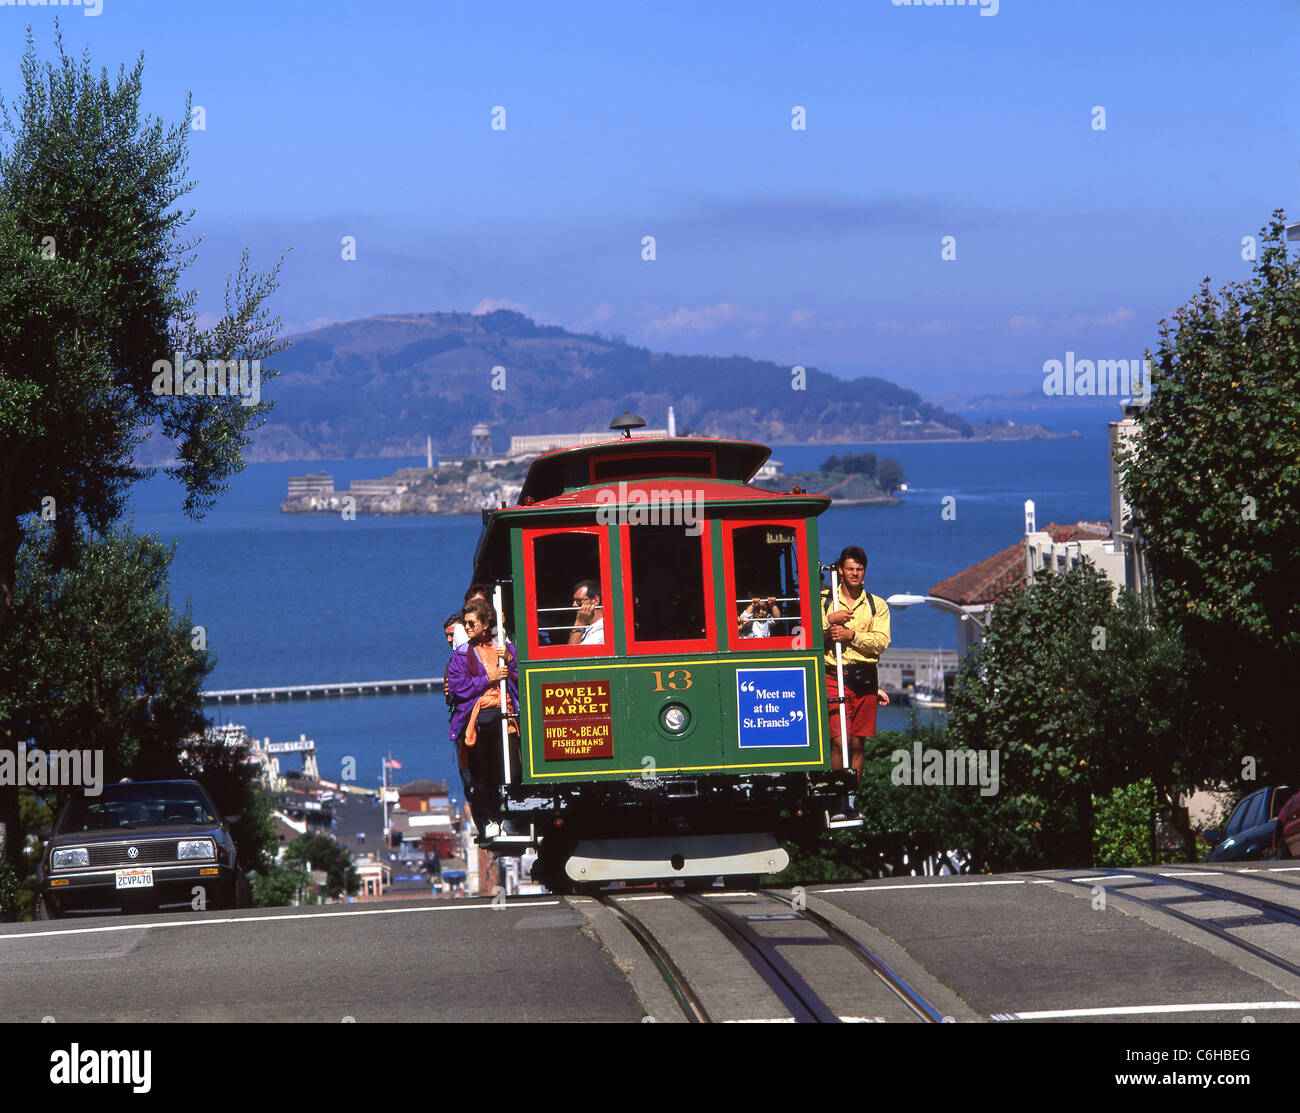 Seilbahn auf Hyde Street, San Francisco, California, Vereinigte Staaten von Amerika Stockfoto